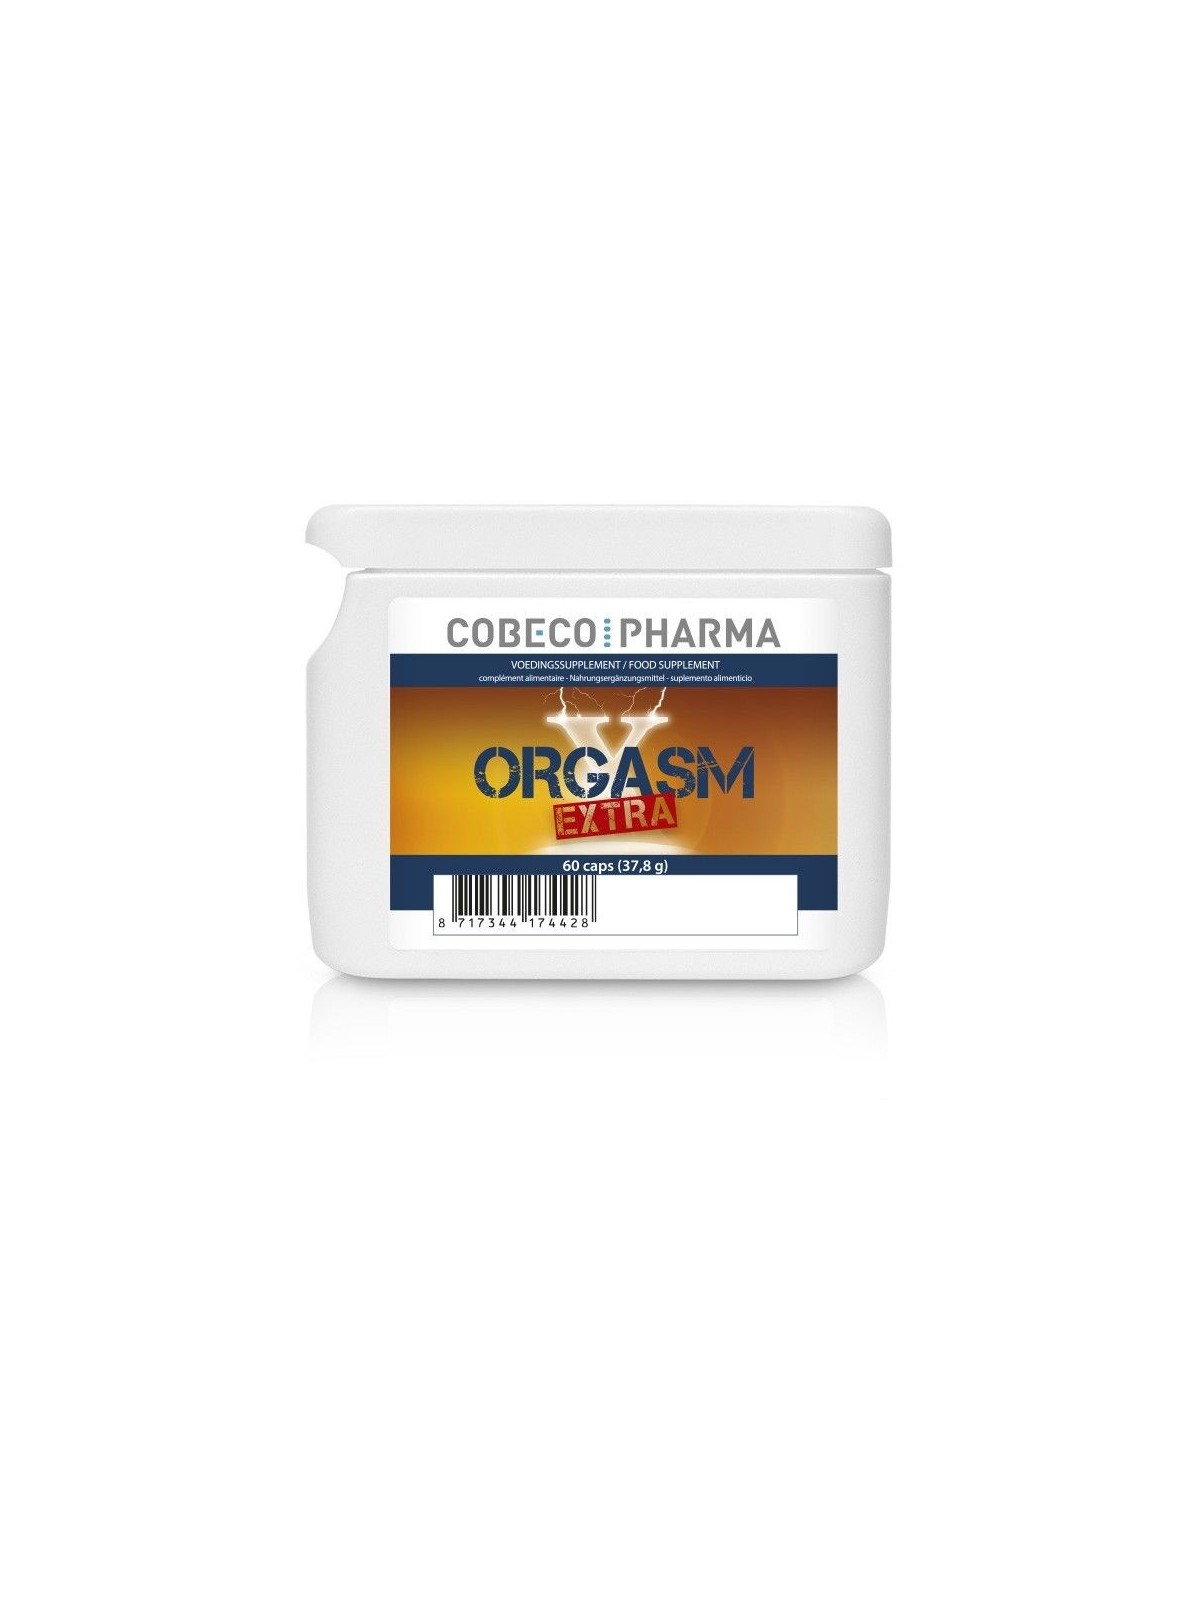 Orgasm Xtra For Men Cápsulas Potenciadoras 60 Caps - Comprar Potenciador erección Cobeco - Potenciadores de erección (1)